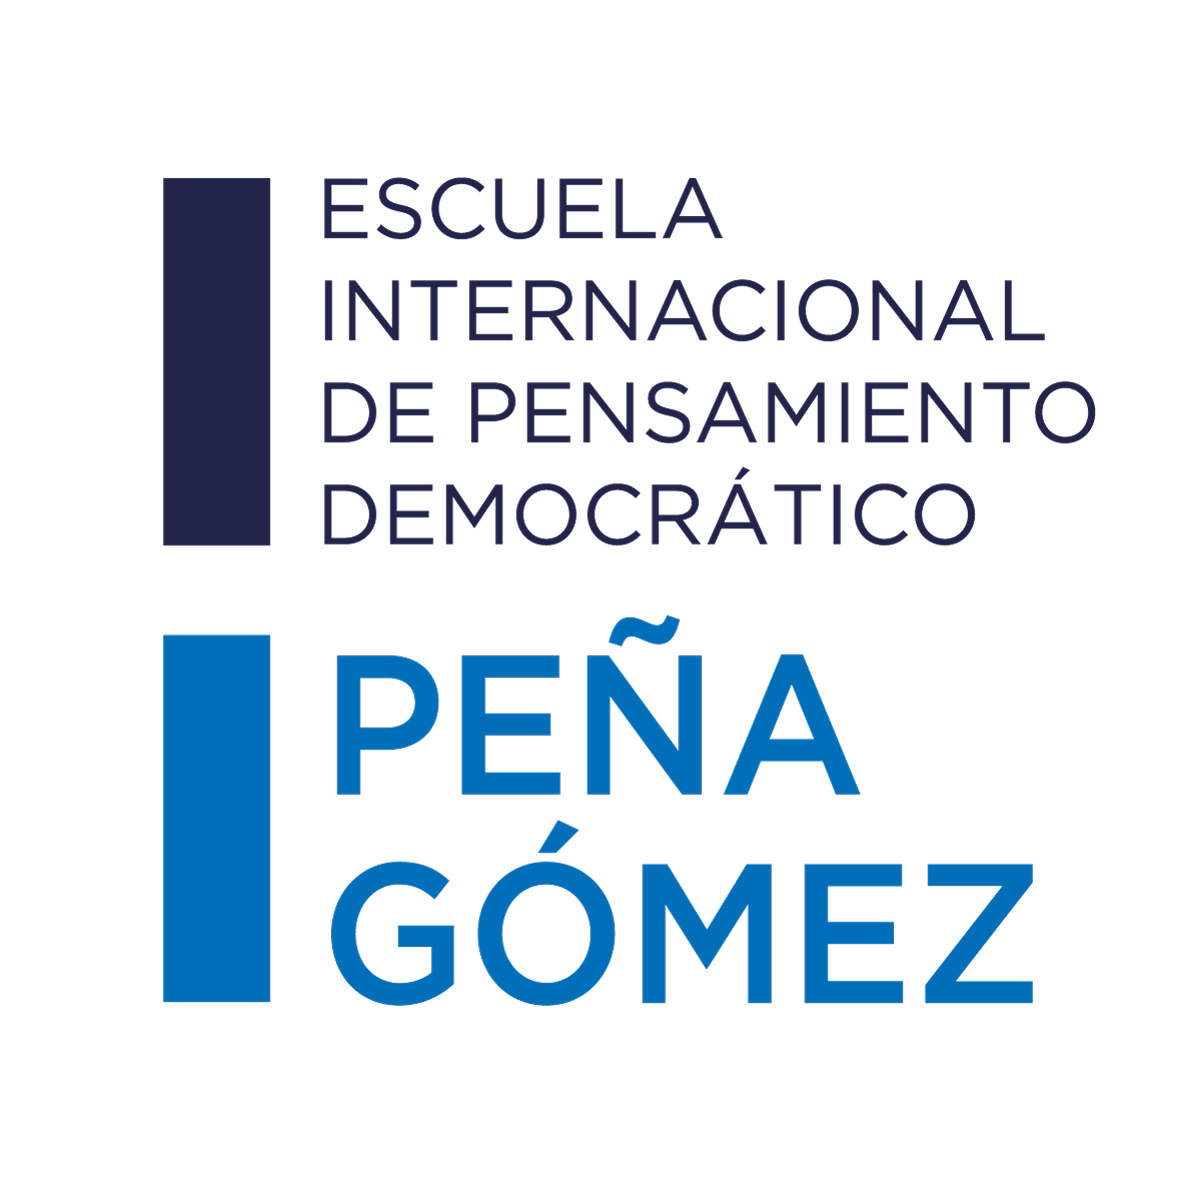 Escuela Internacional de Pensamiento Democrático Peña Gómez